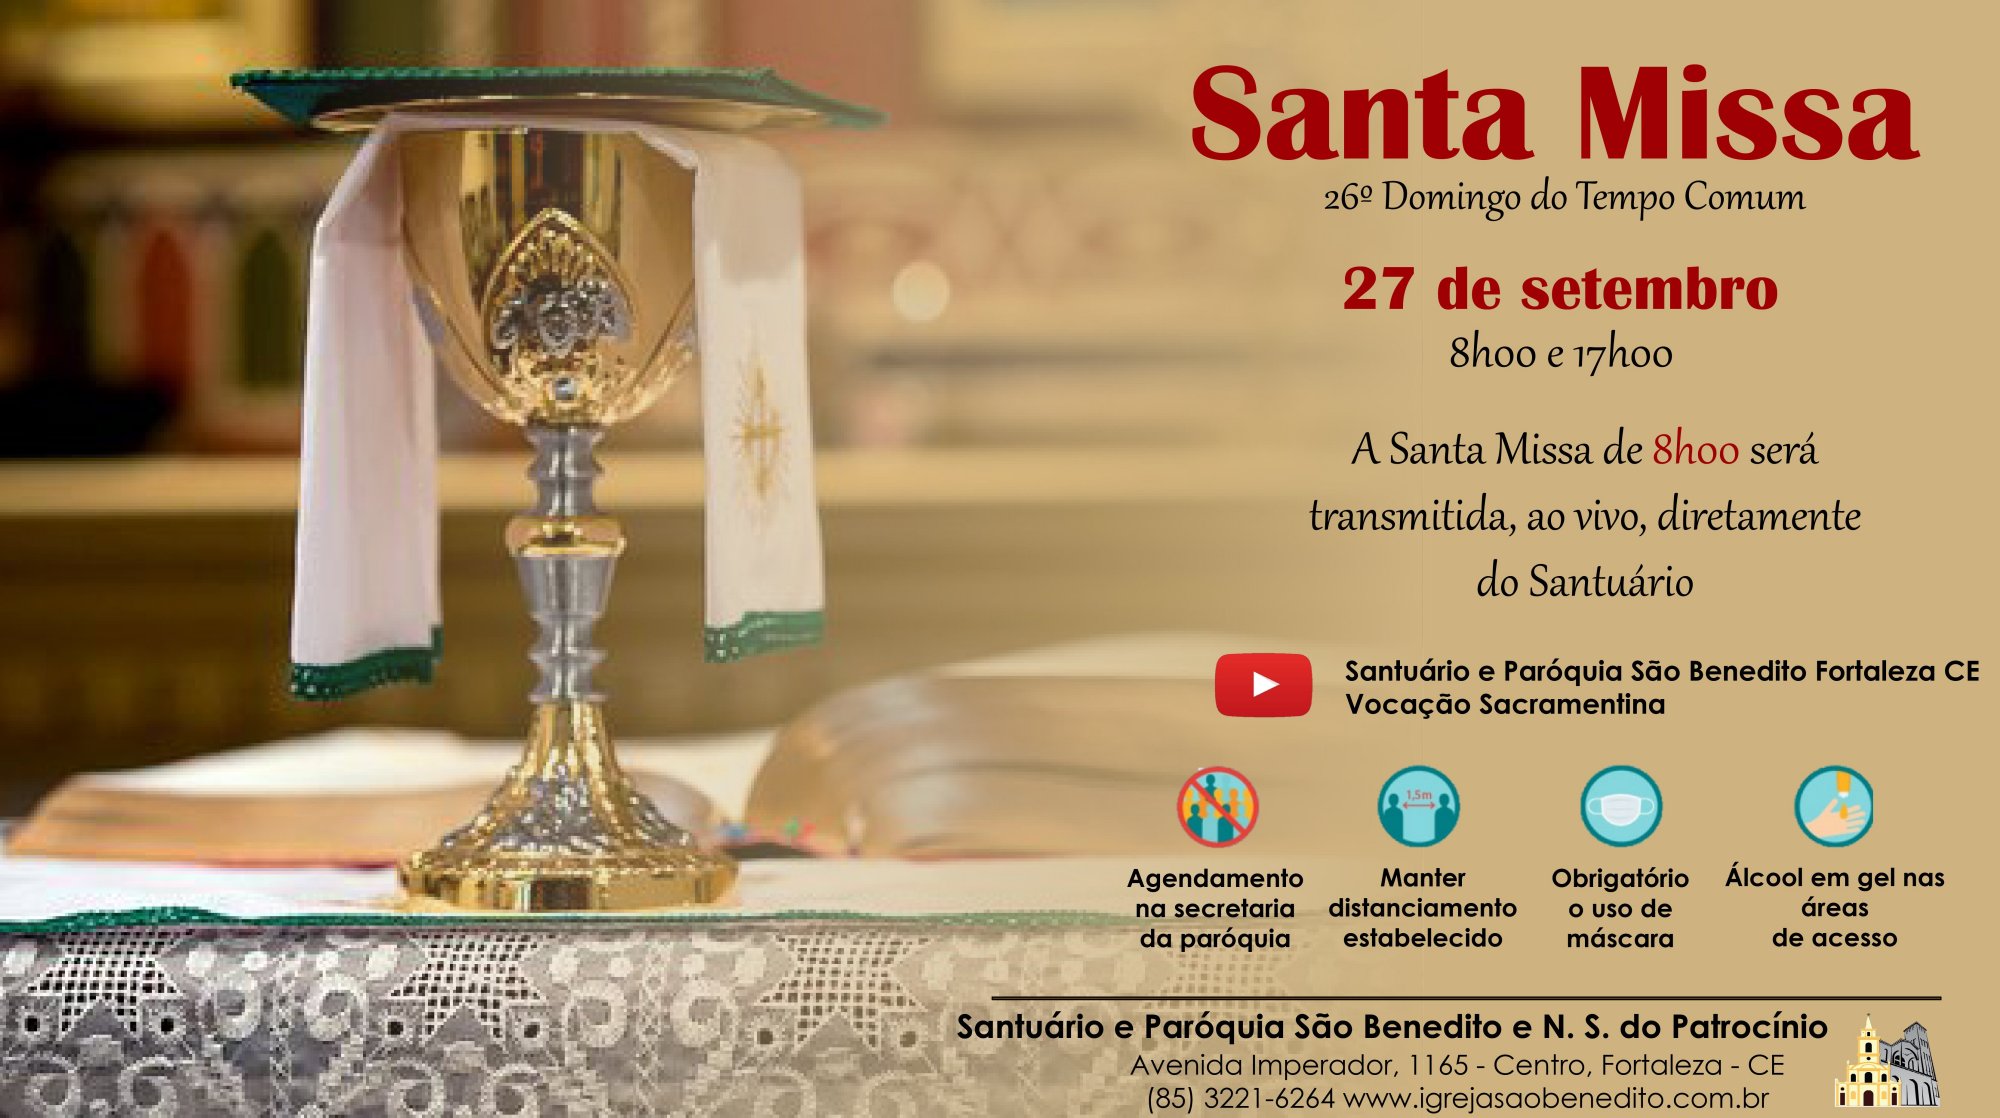 Santa Missa presencial, com transmissão ao vivo 27/09. Participe!